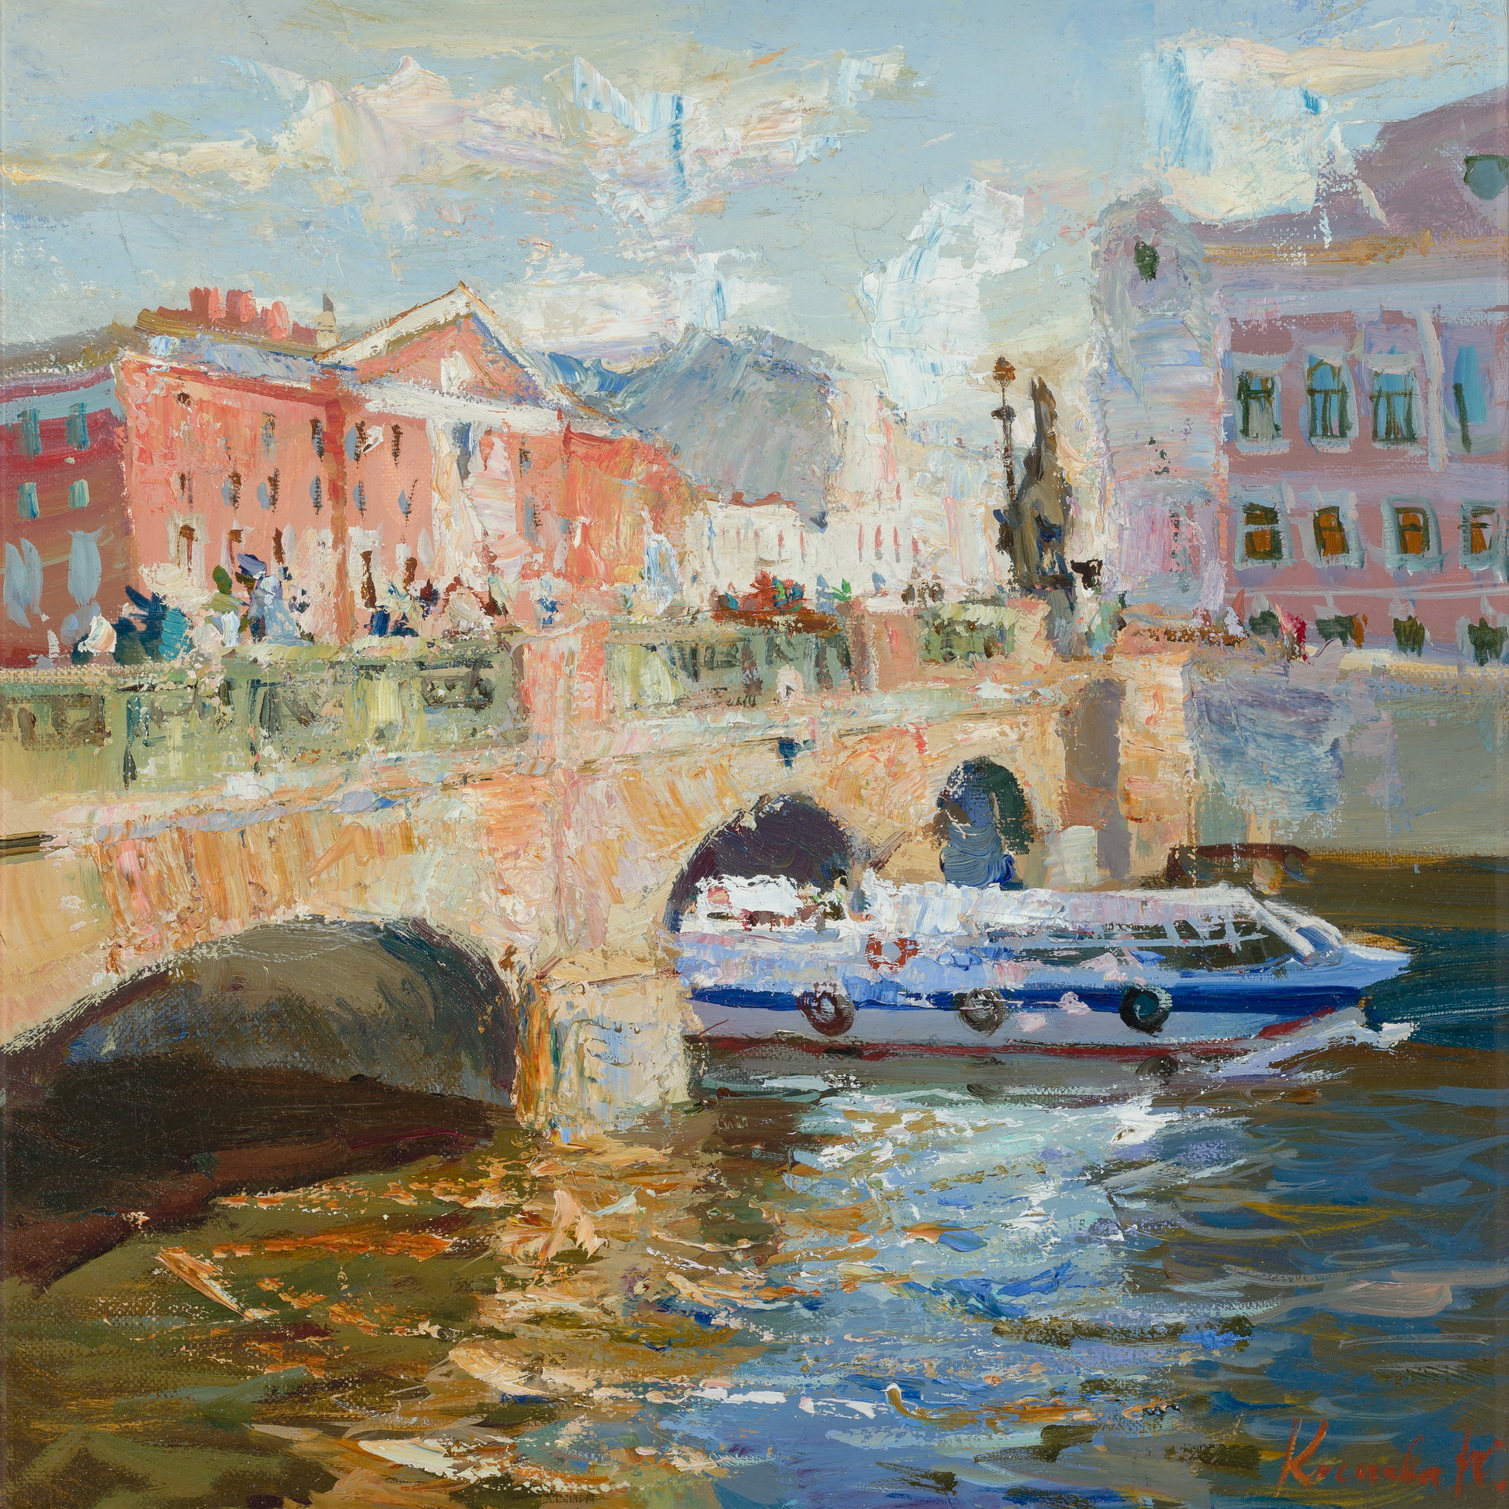 Anichkov Bridge - 1, Julia Kostsova, Buy the painting Oil